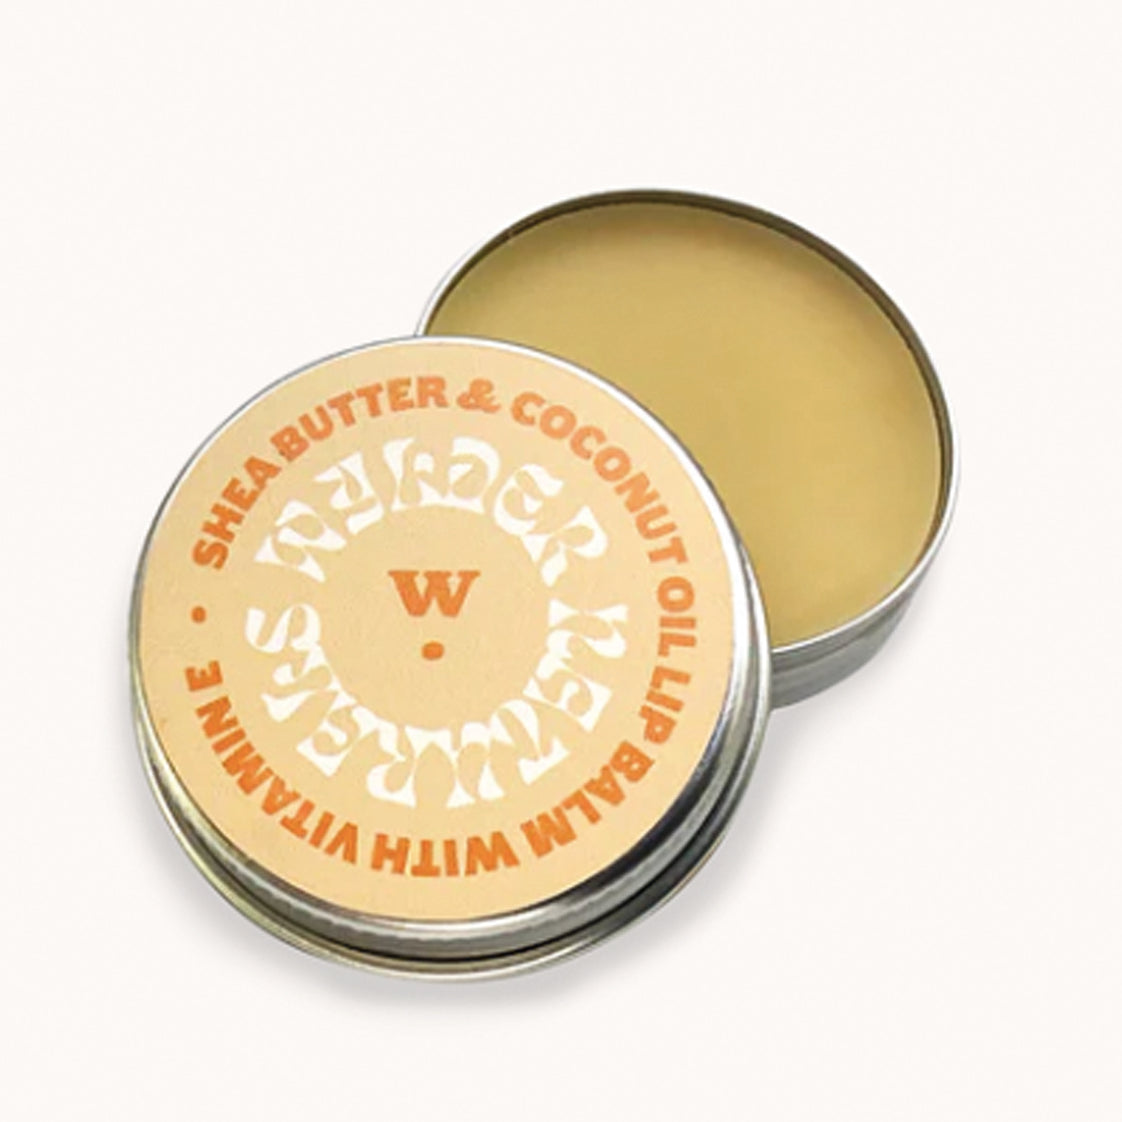 Wylder Naturals Lip Balm - Shea Butter & Coconut Oil with Vitamin E